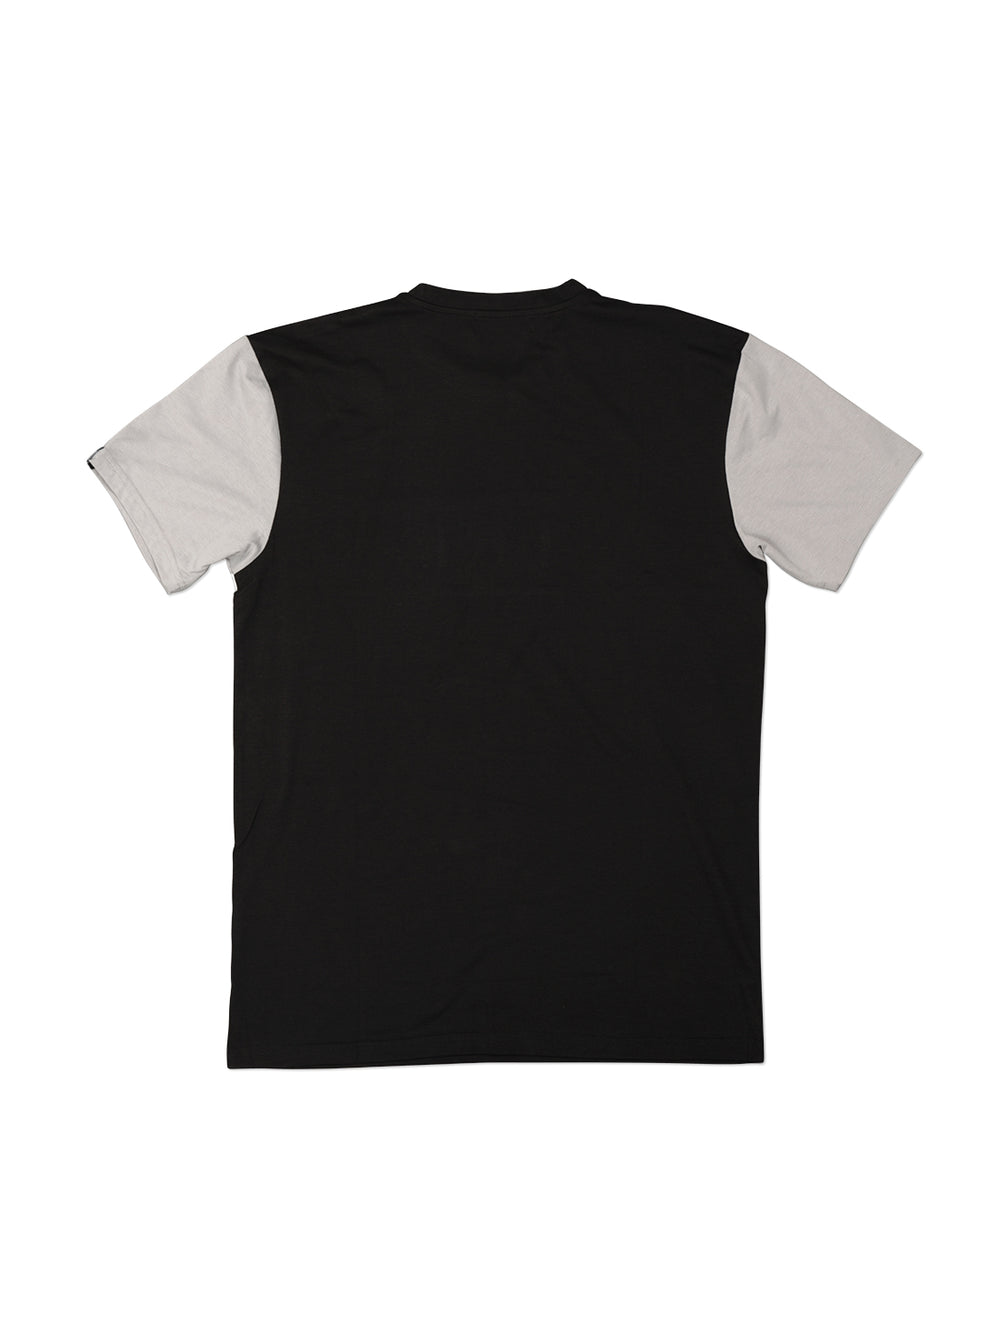 TRI Grey / BlK Tshirt - Triangulo Swag